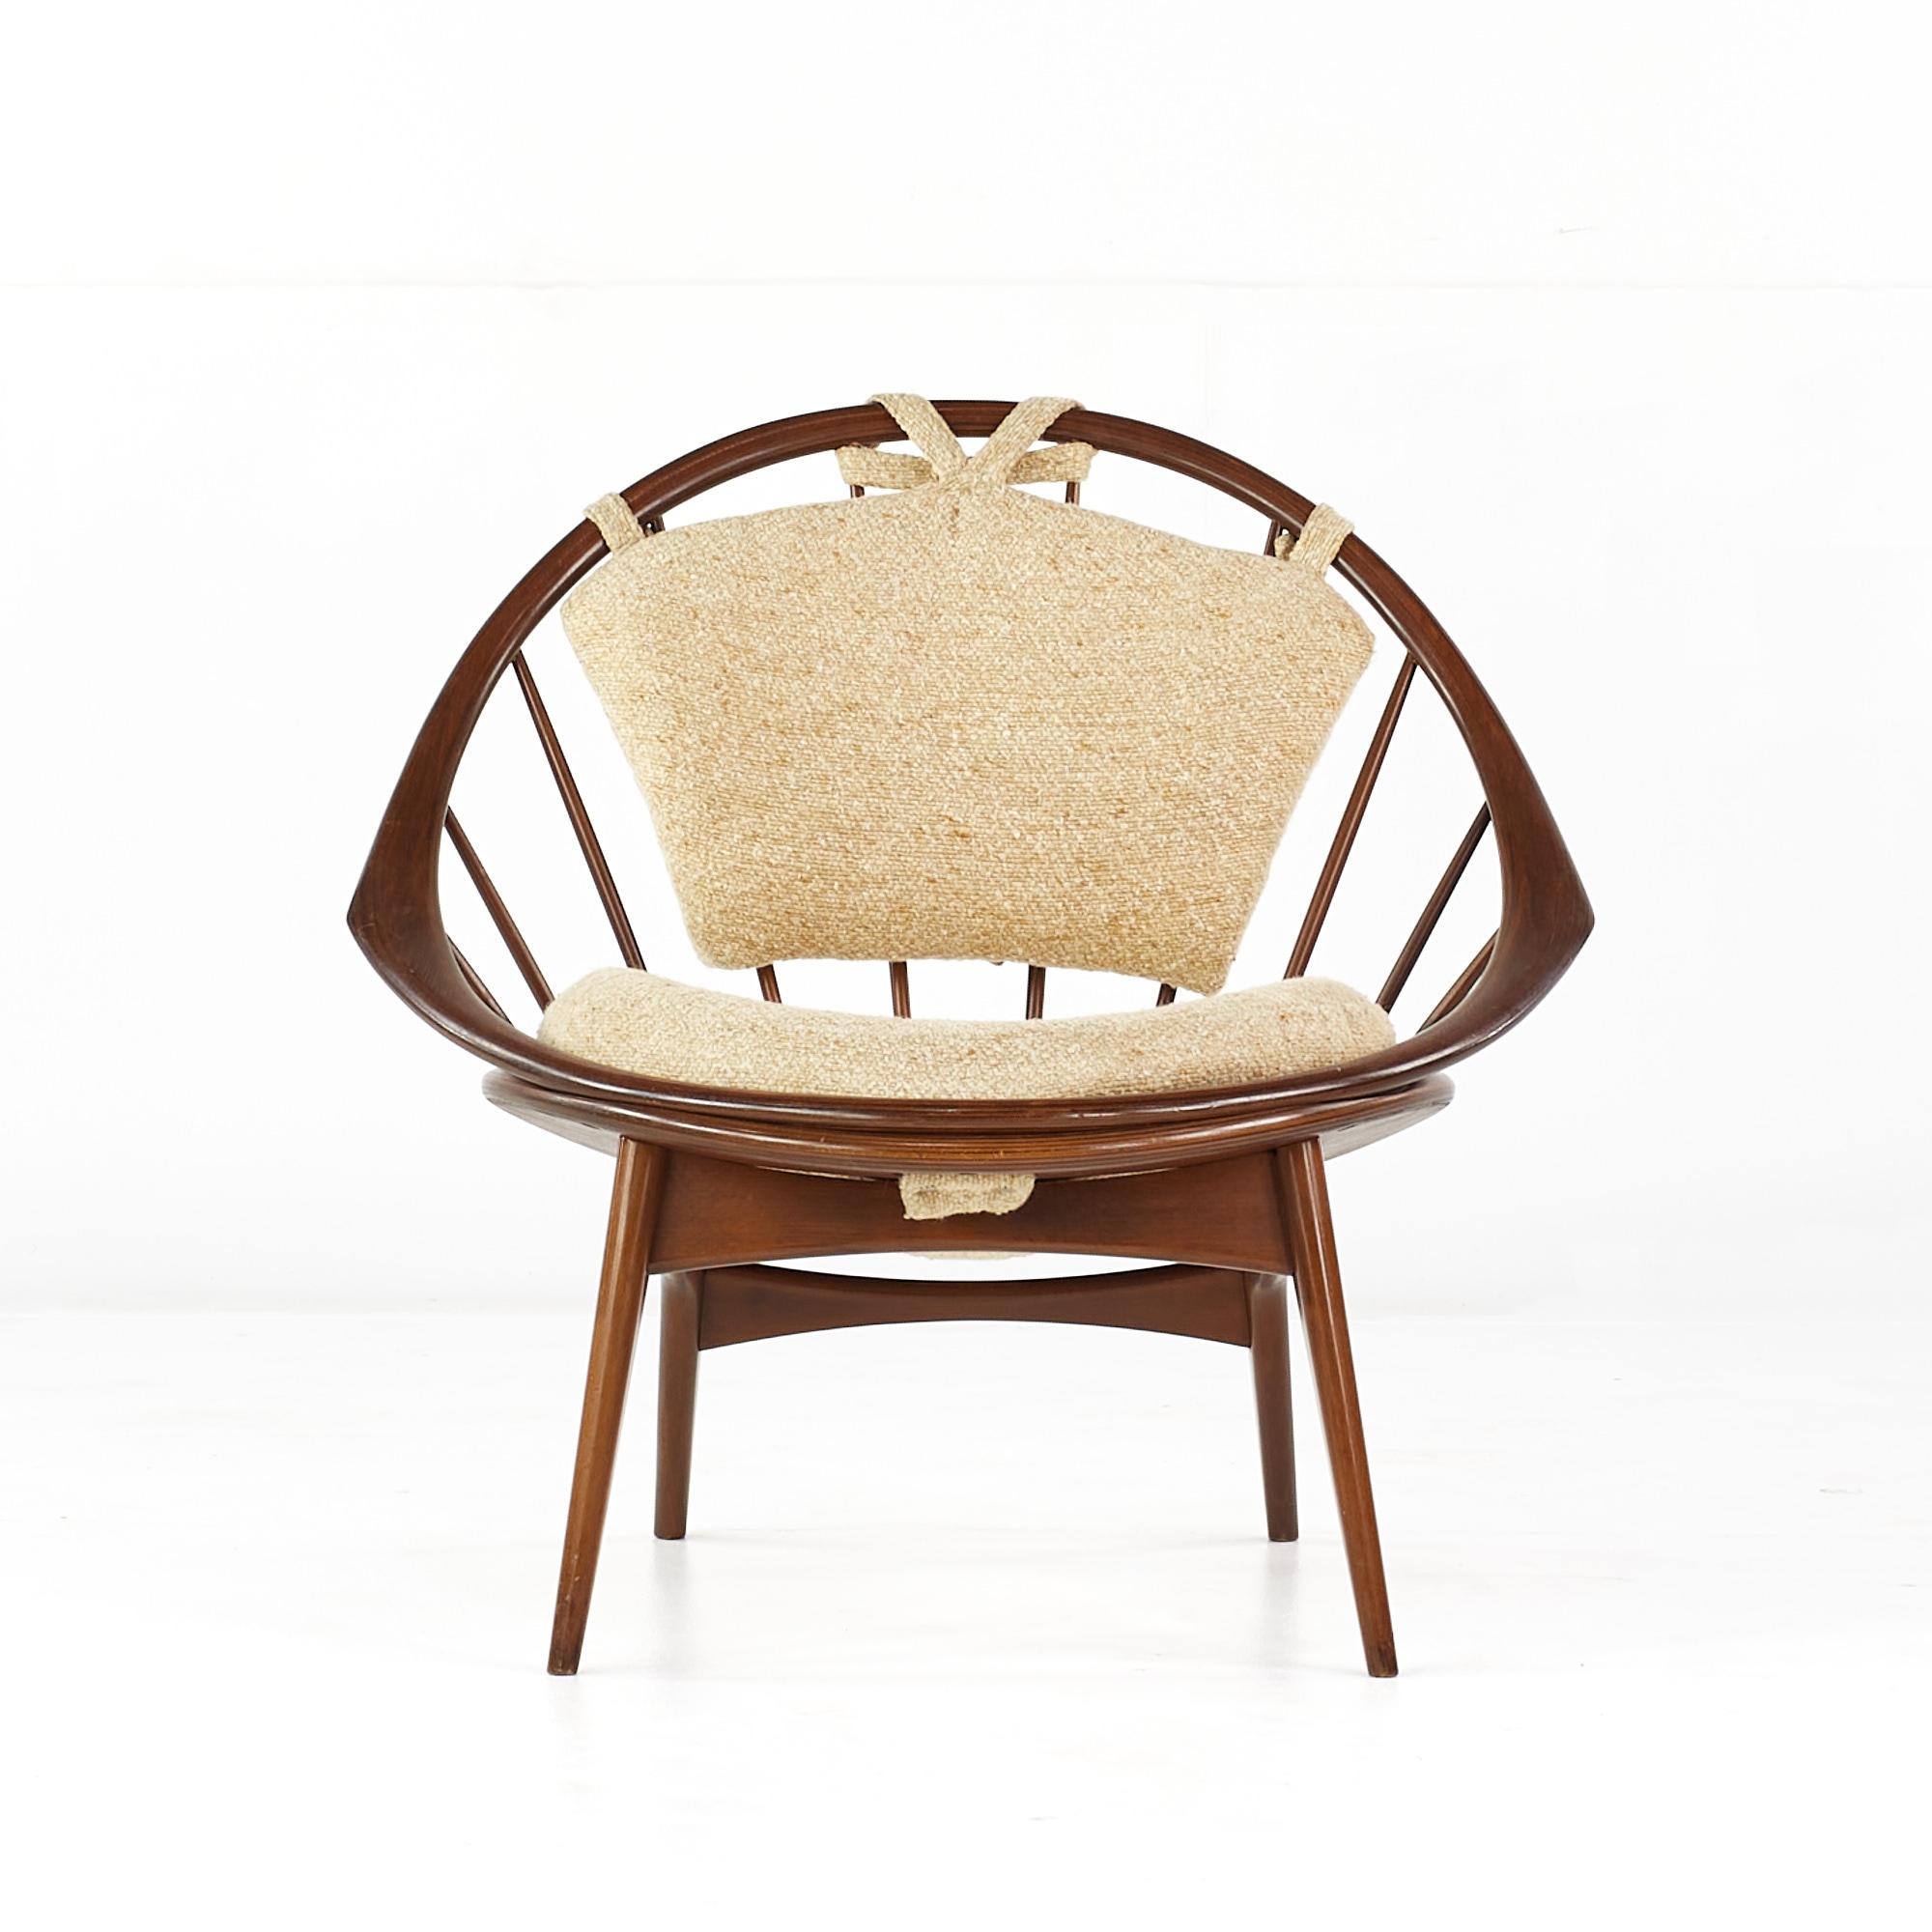 Chaise paon en noyer du milieu du siècle de Kofod Larsen for Selig.

Cette chaise mesure : 33,5 de large x 28 de profond x 32 pouces de haut, avec une hauteur d'assise/d'espace libre de 16 pouces.

Tous les meubles peuvent être achetés dans ce